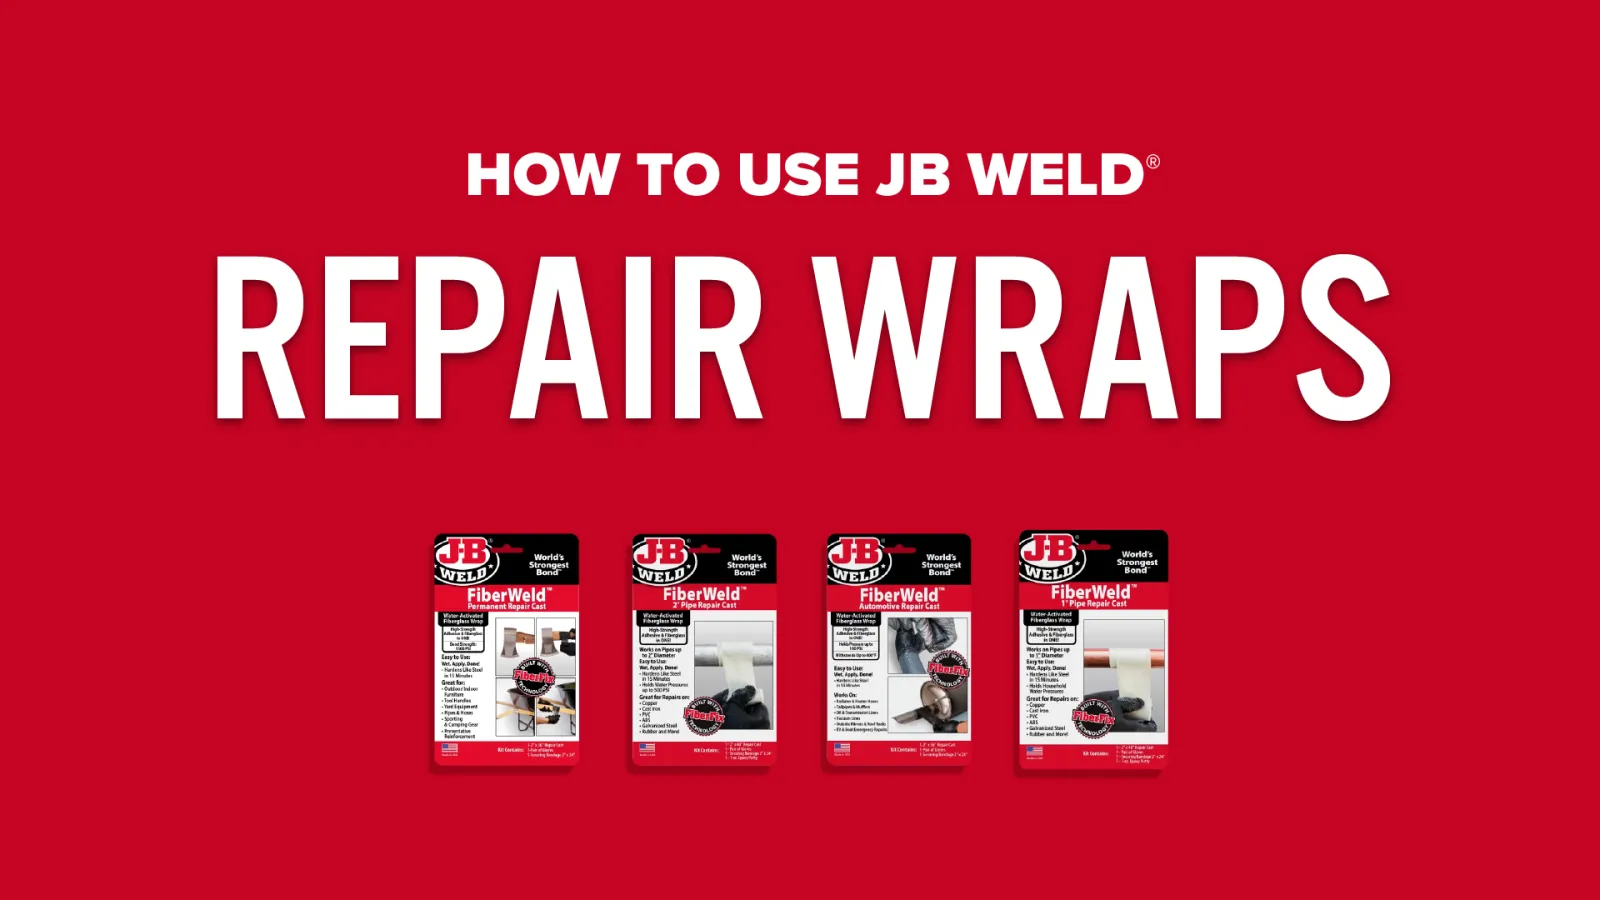 J-B WELD, Fiberglass, 2 in W x 4 ft L Wrap Size, Pipe Repair Kit